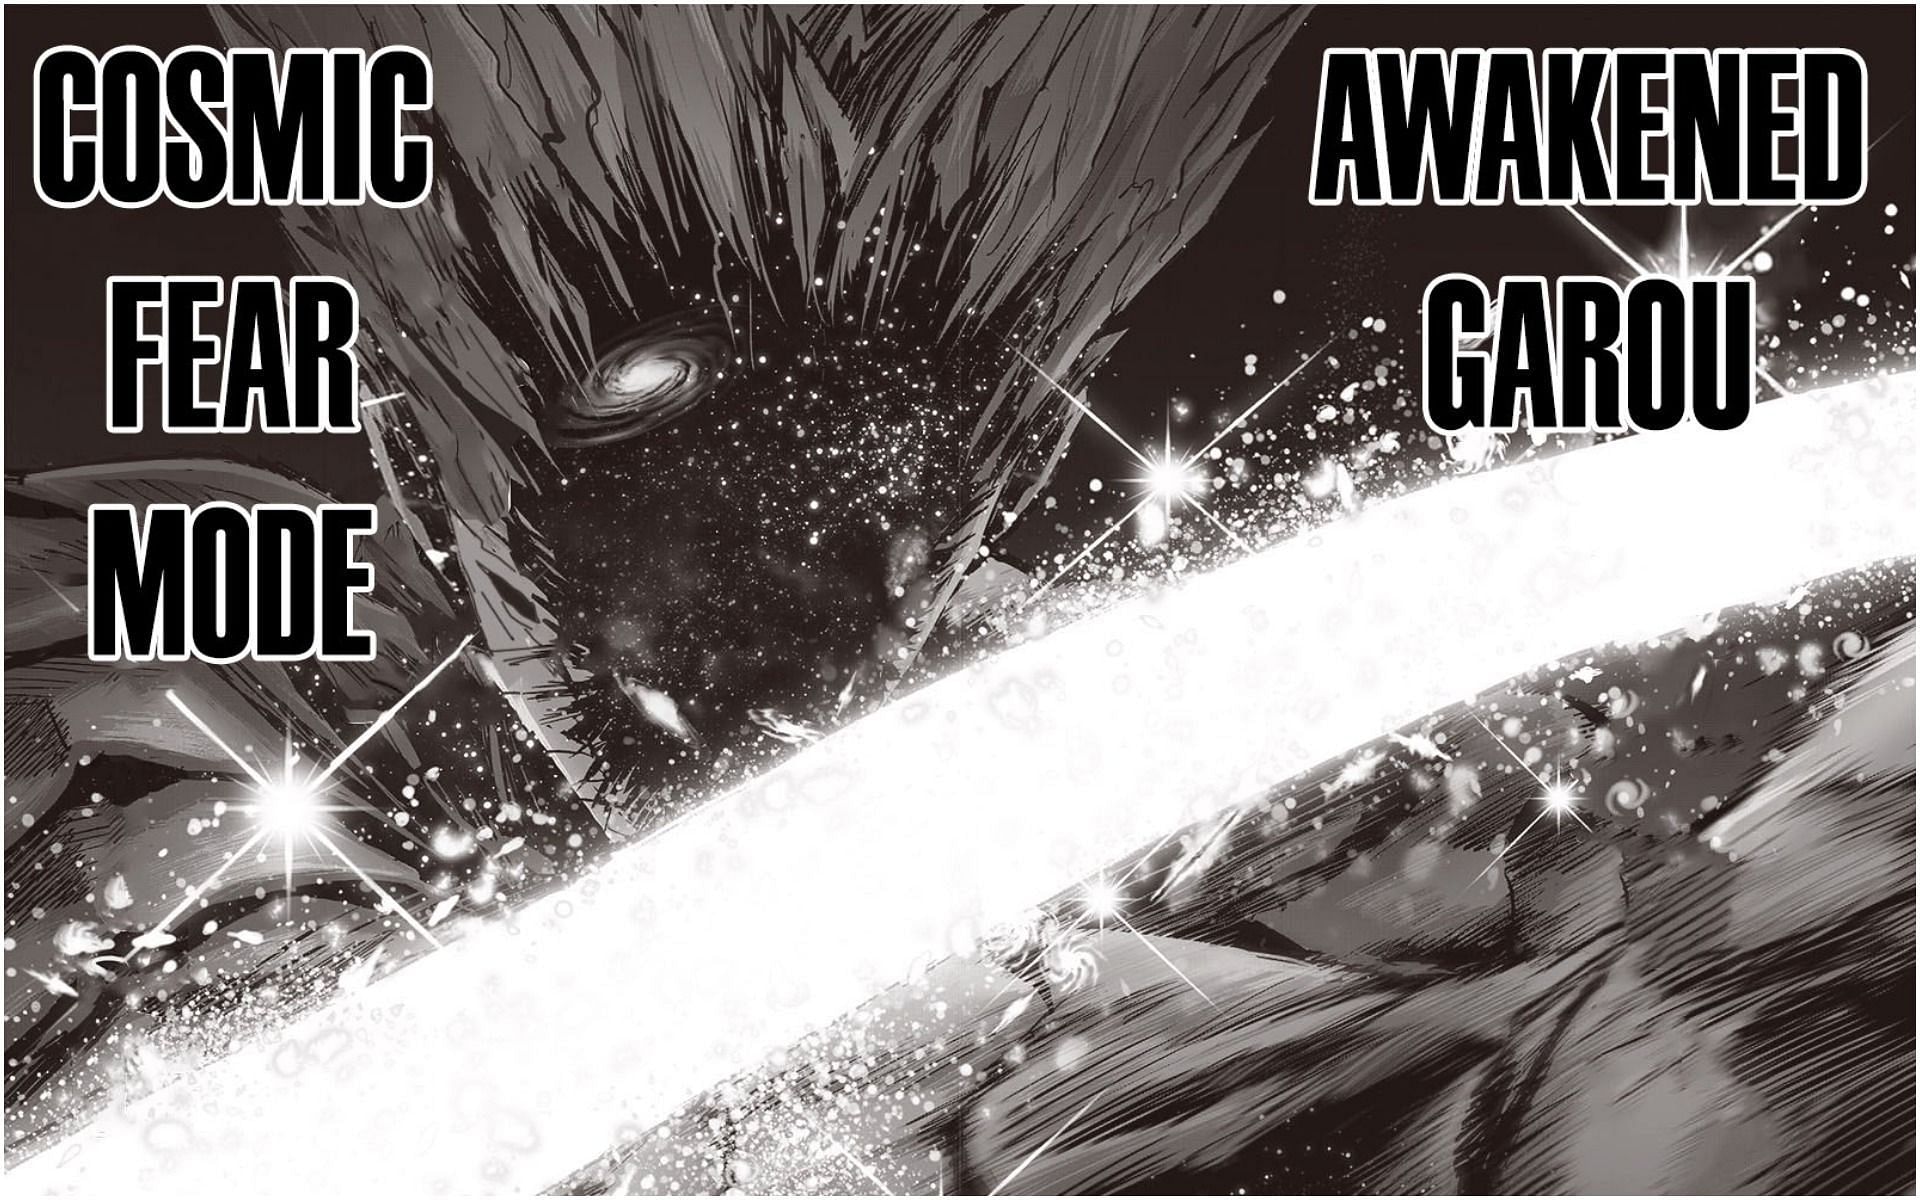 cosmic garou  One punch man poster, One punch man manga, One punch man  anime